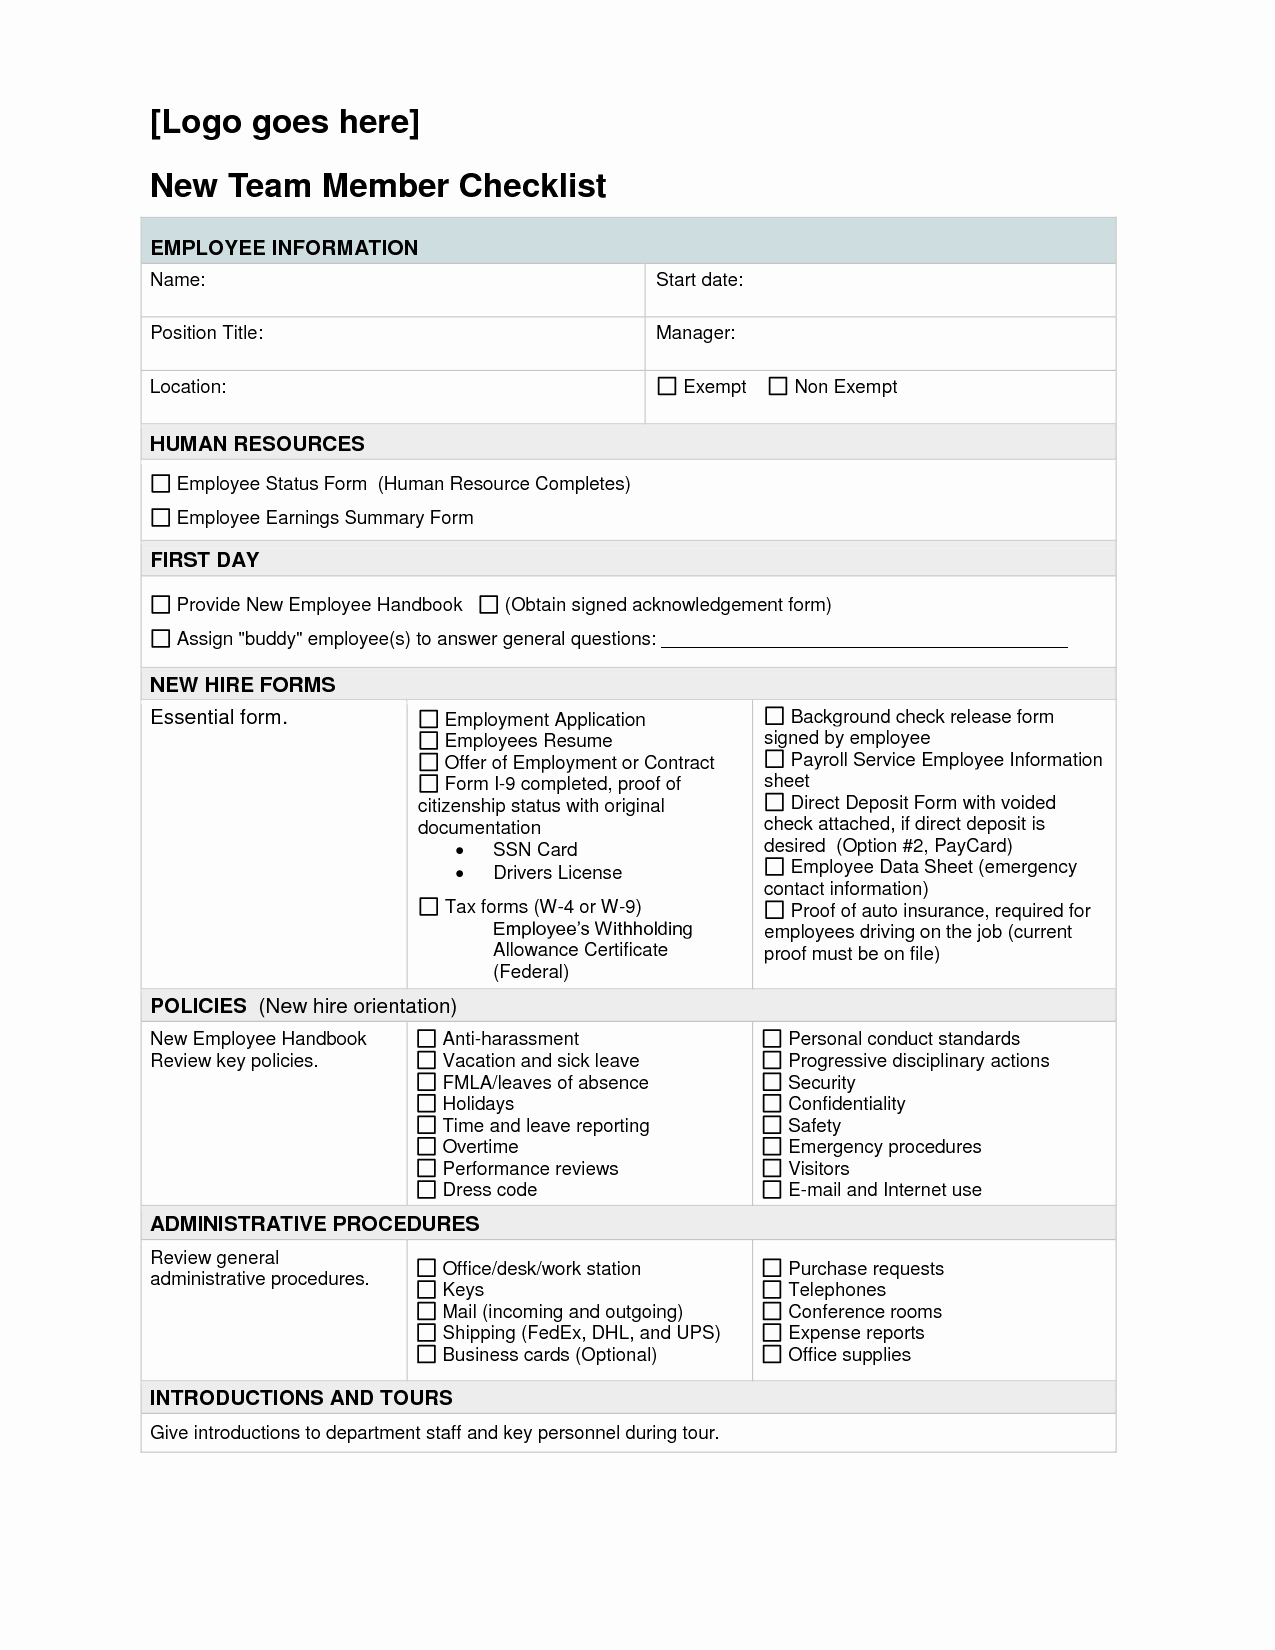 New Hire Paperwork Checklist Template Unique New Hire Checklist Full Version